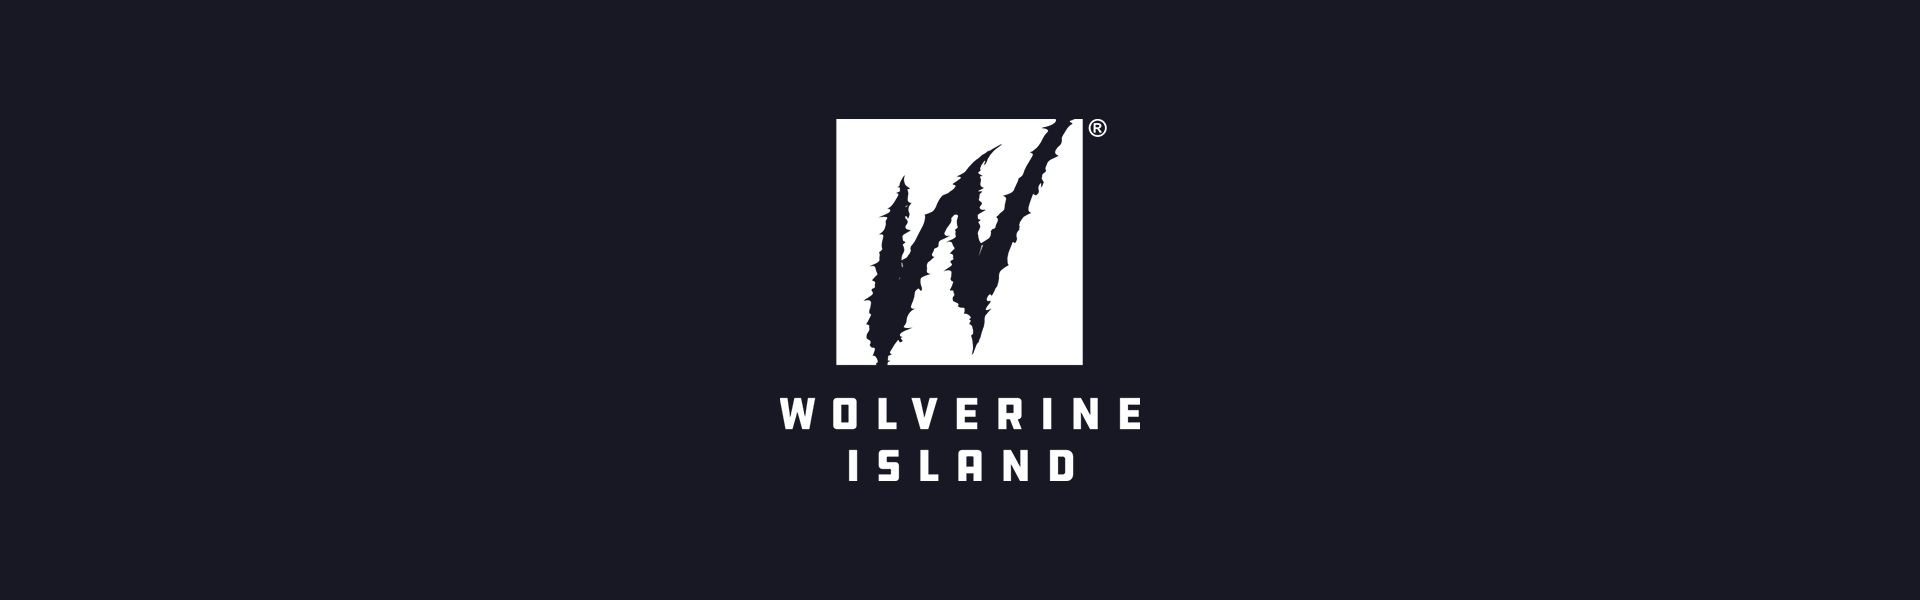 Wolverine Island header